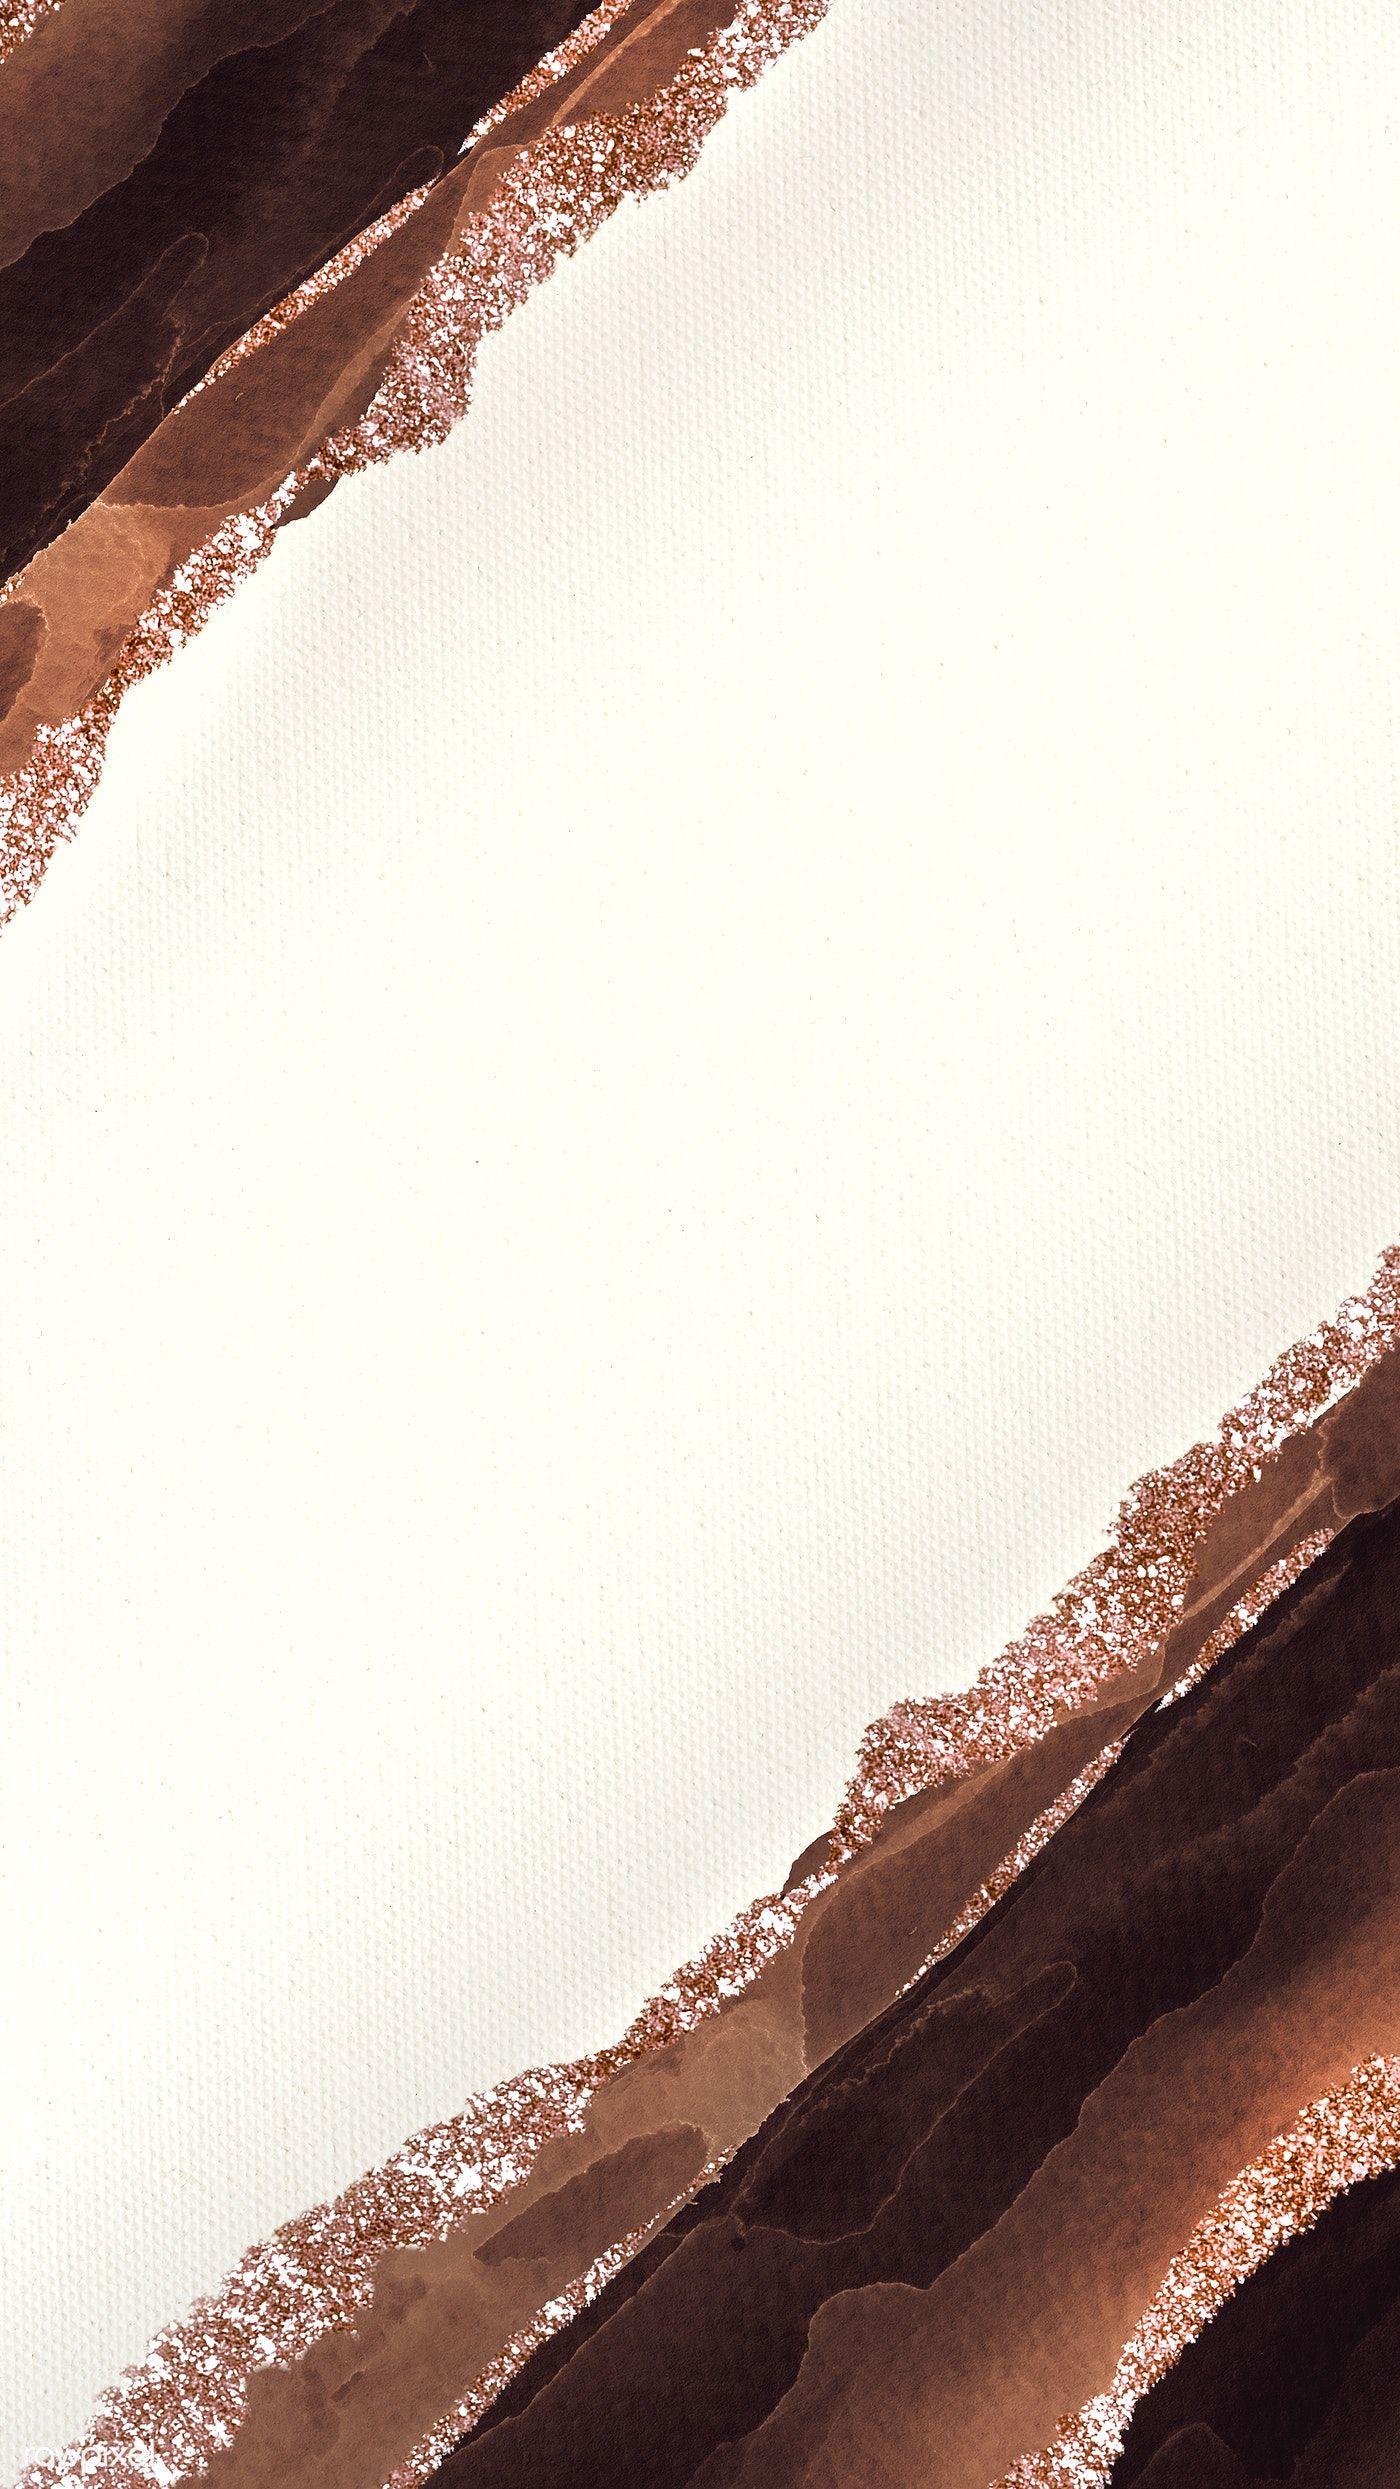 Dark Brown Aesthetic Wallpapers - Top Free Dark Brown Aesthetic